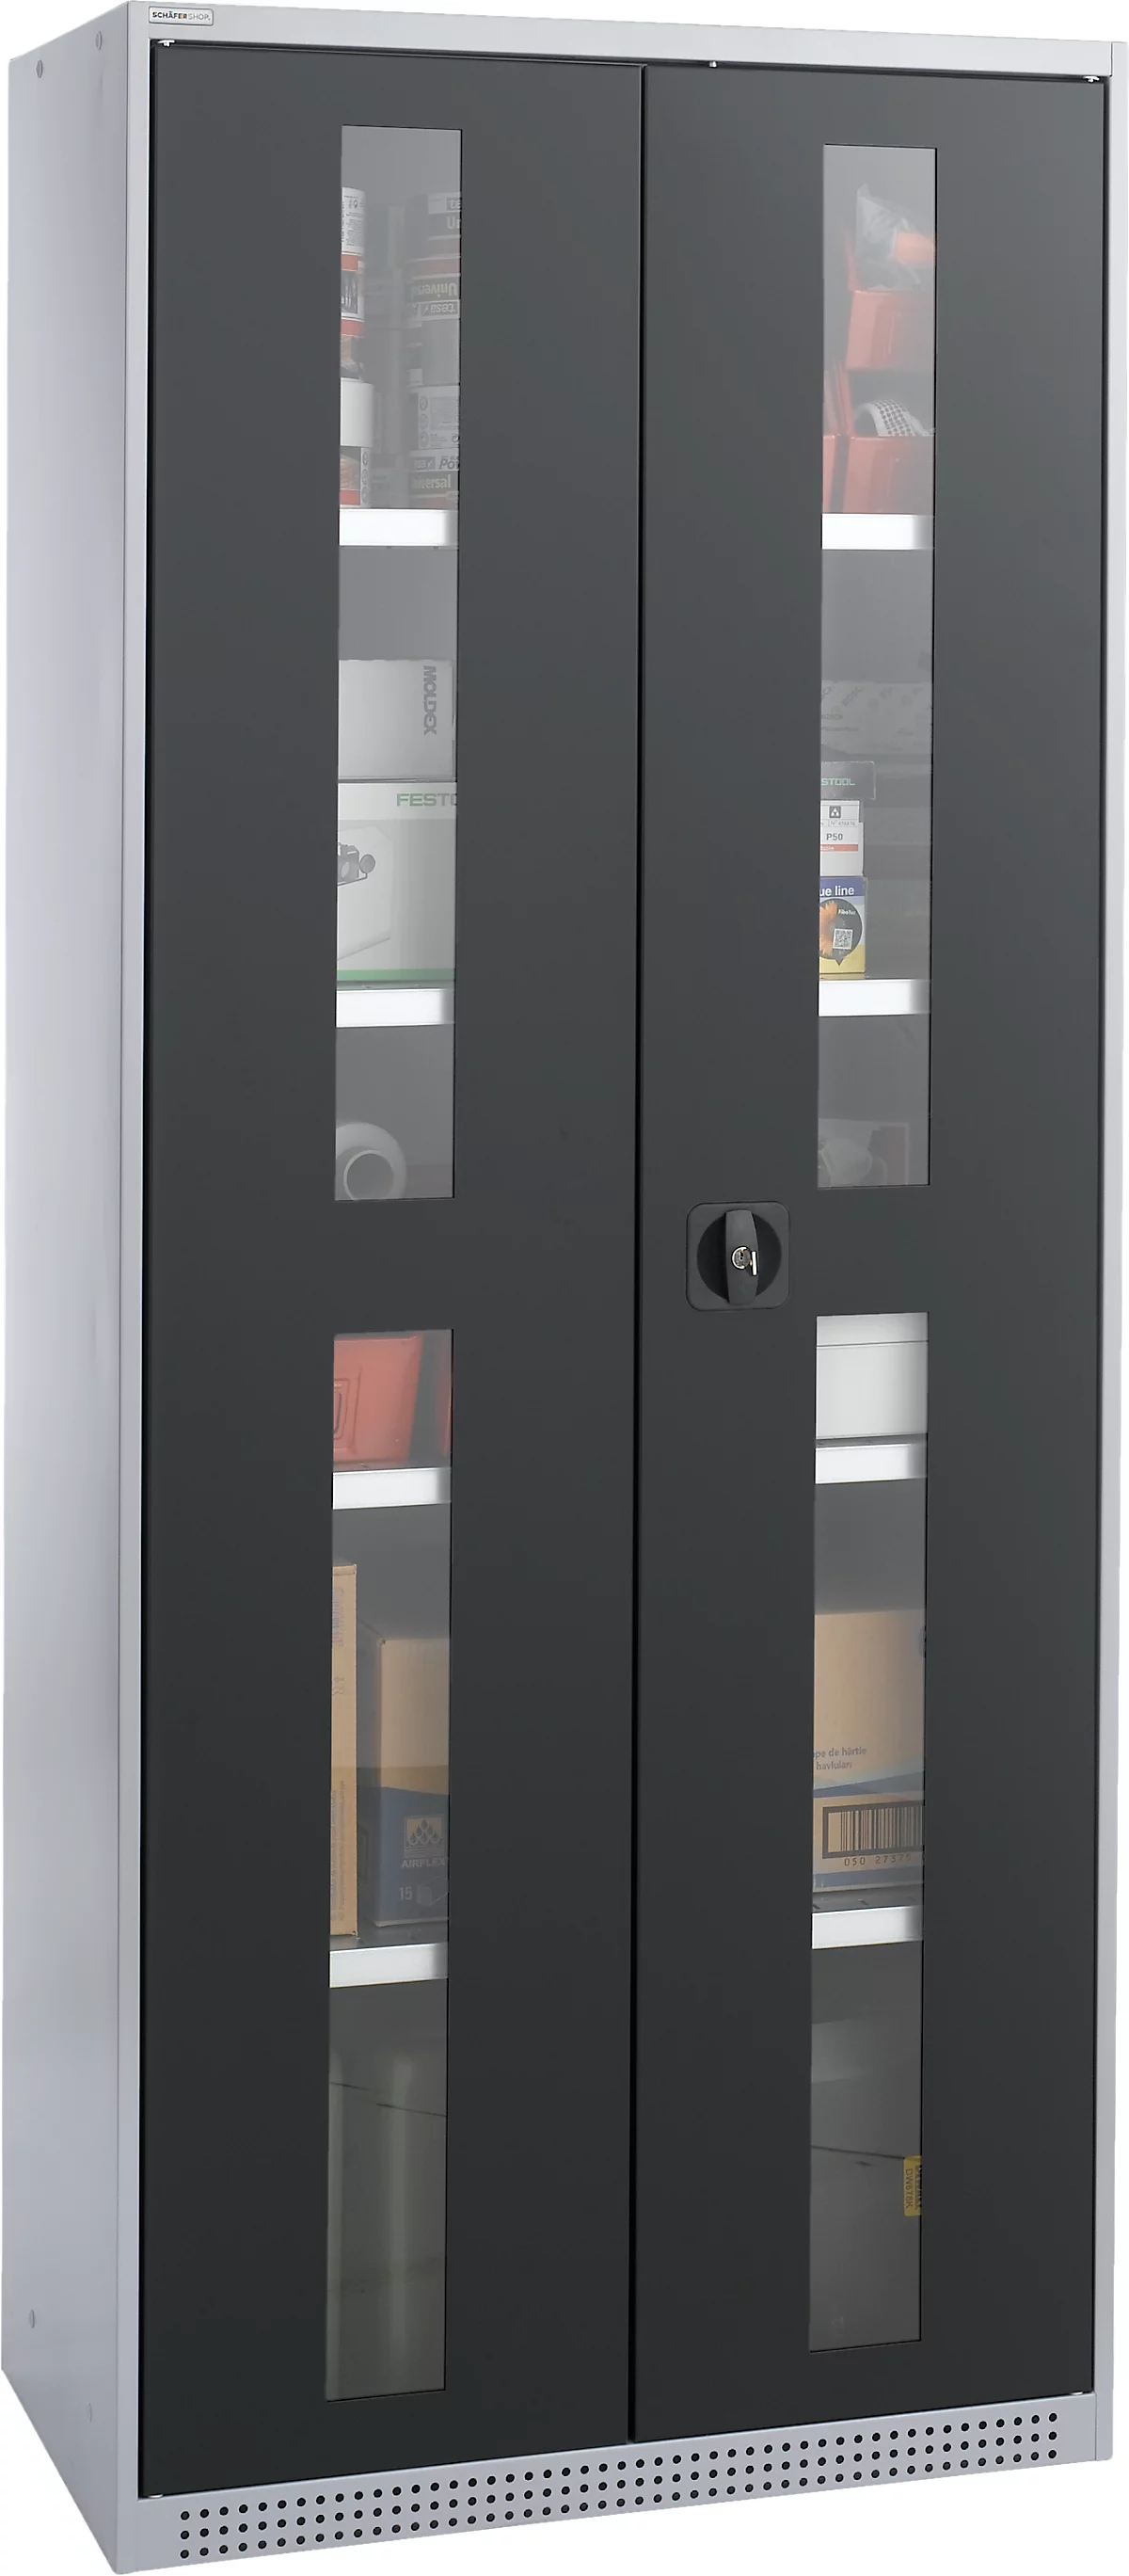 Schäfer Shop Genius armario con puerta giratoria FS, acero, mirilla, agujeros de ventilación, An 810 x Pr 520 x Al 1950 mm, 5 OH, aluminio blanco/gris antracita, hasta 300 kg 